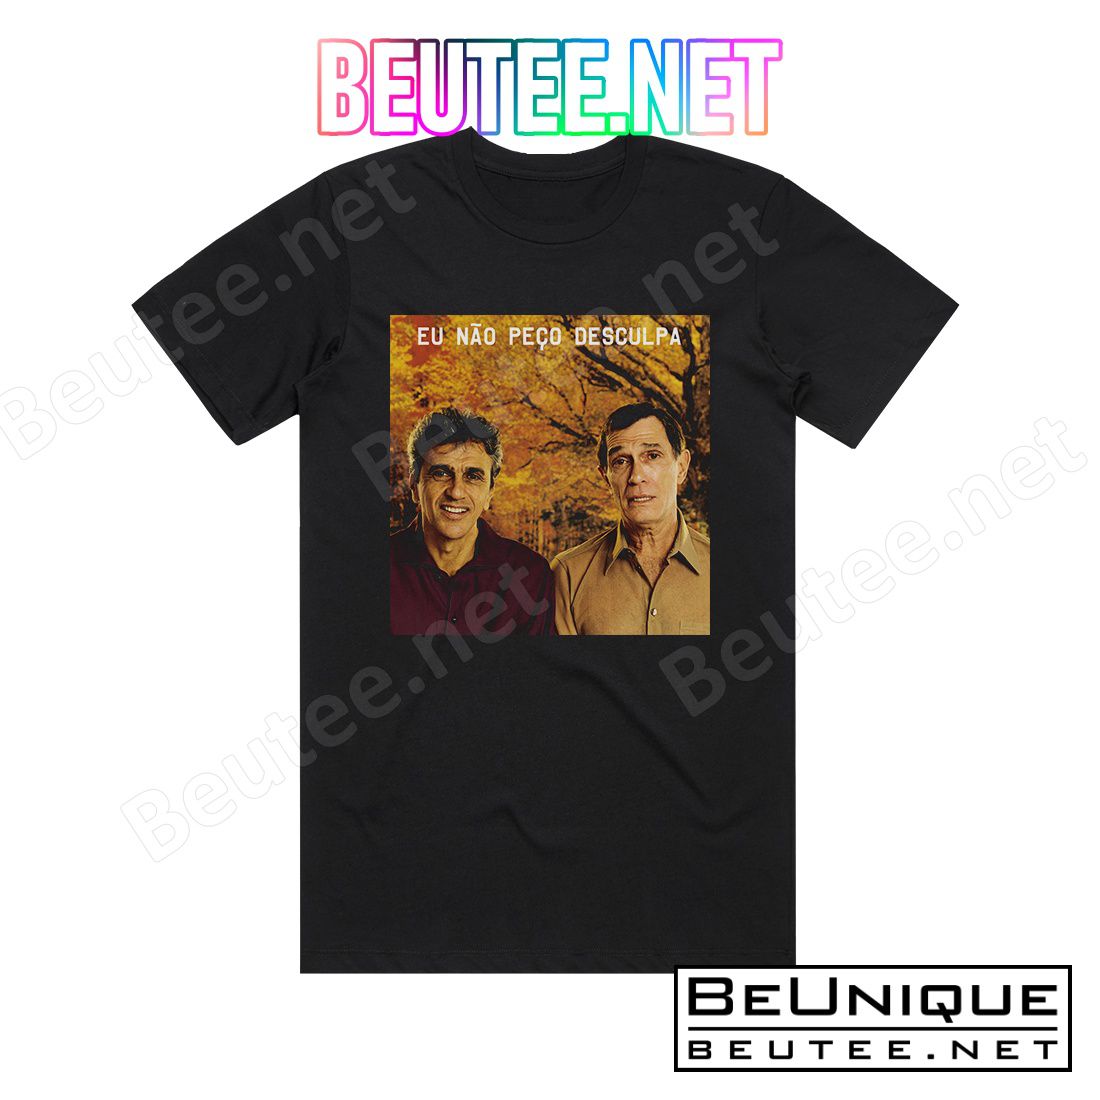 Caetano Veloso Eu Nao Peco Desculpa Album Cover T-Shirt